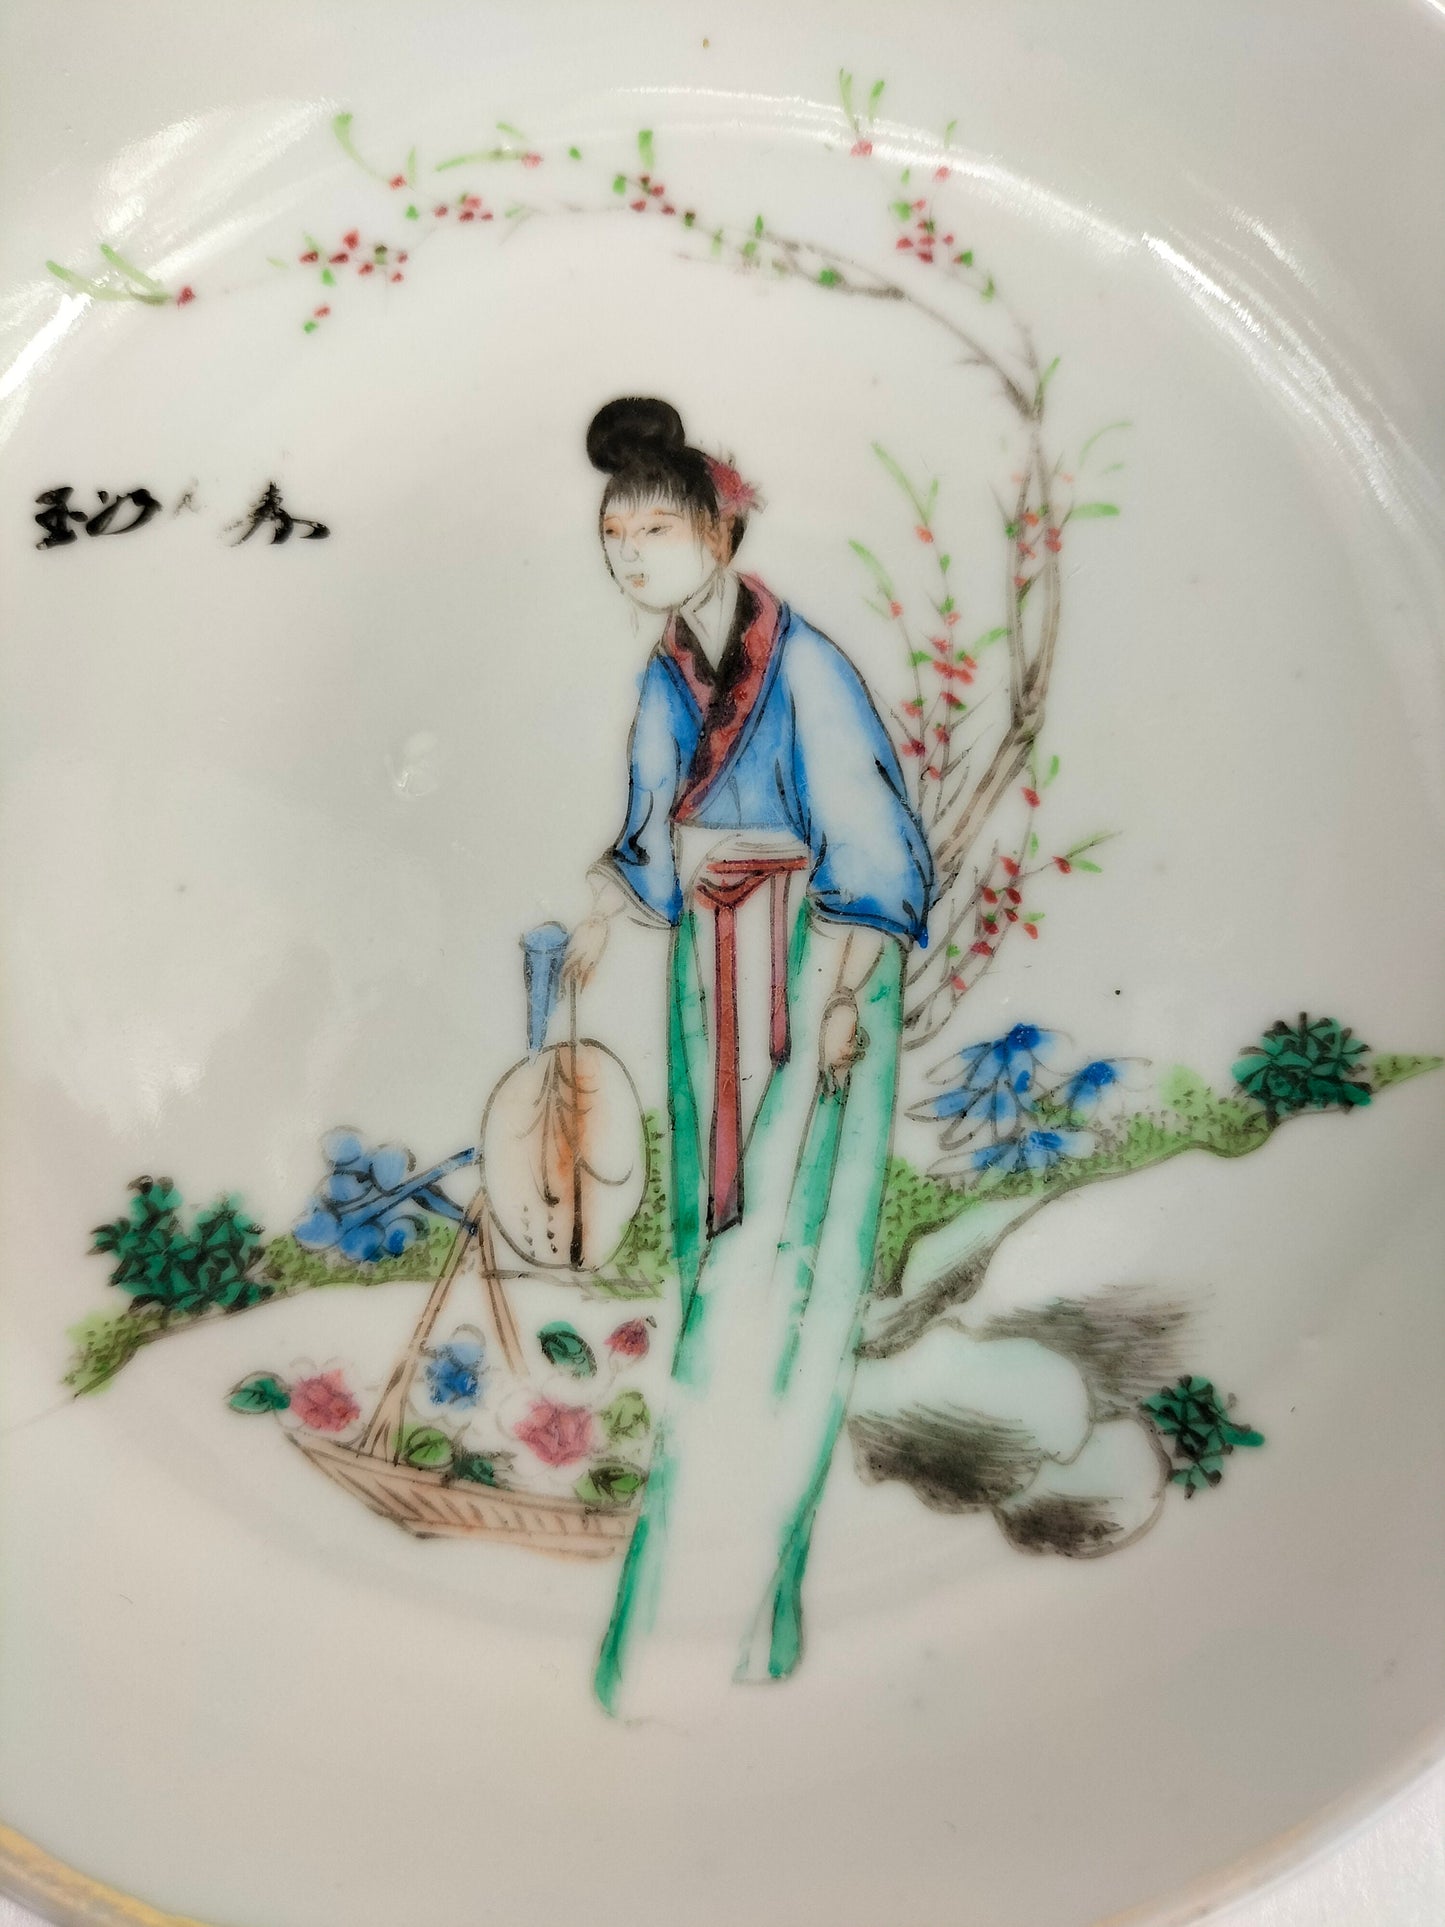 Đĩa cổ Trung Quốc được trang trí hình một người phụ nữ Trung Quốc trong khung cảnh vườn // Thời kỳ Cộng hòa (1912-1949)